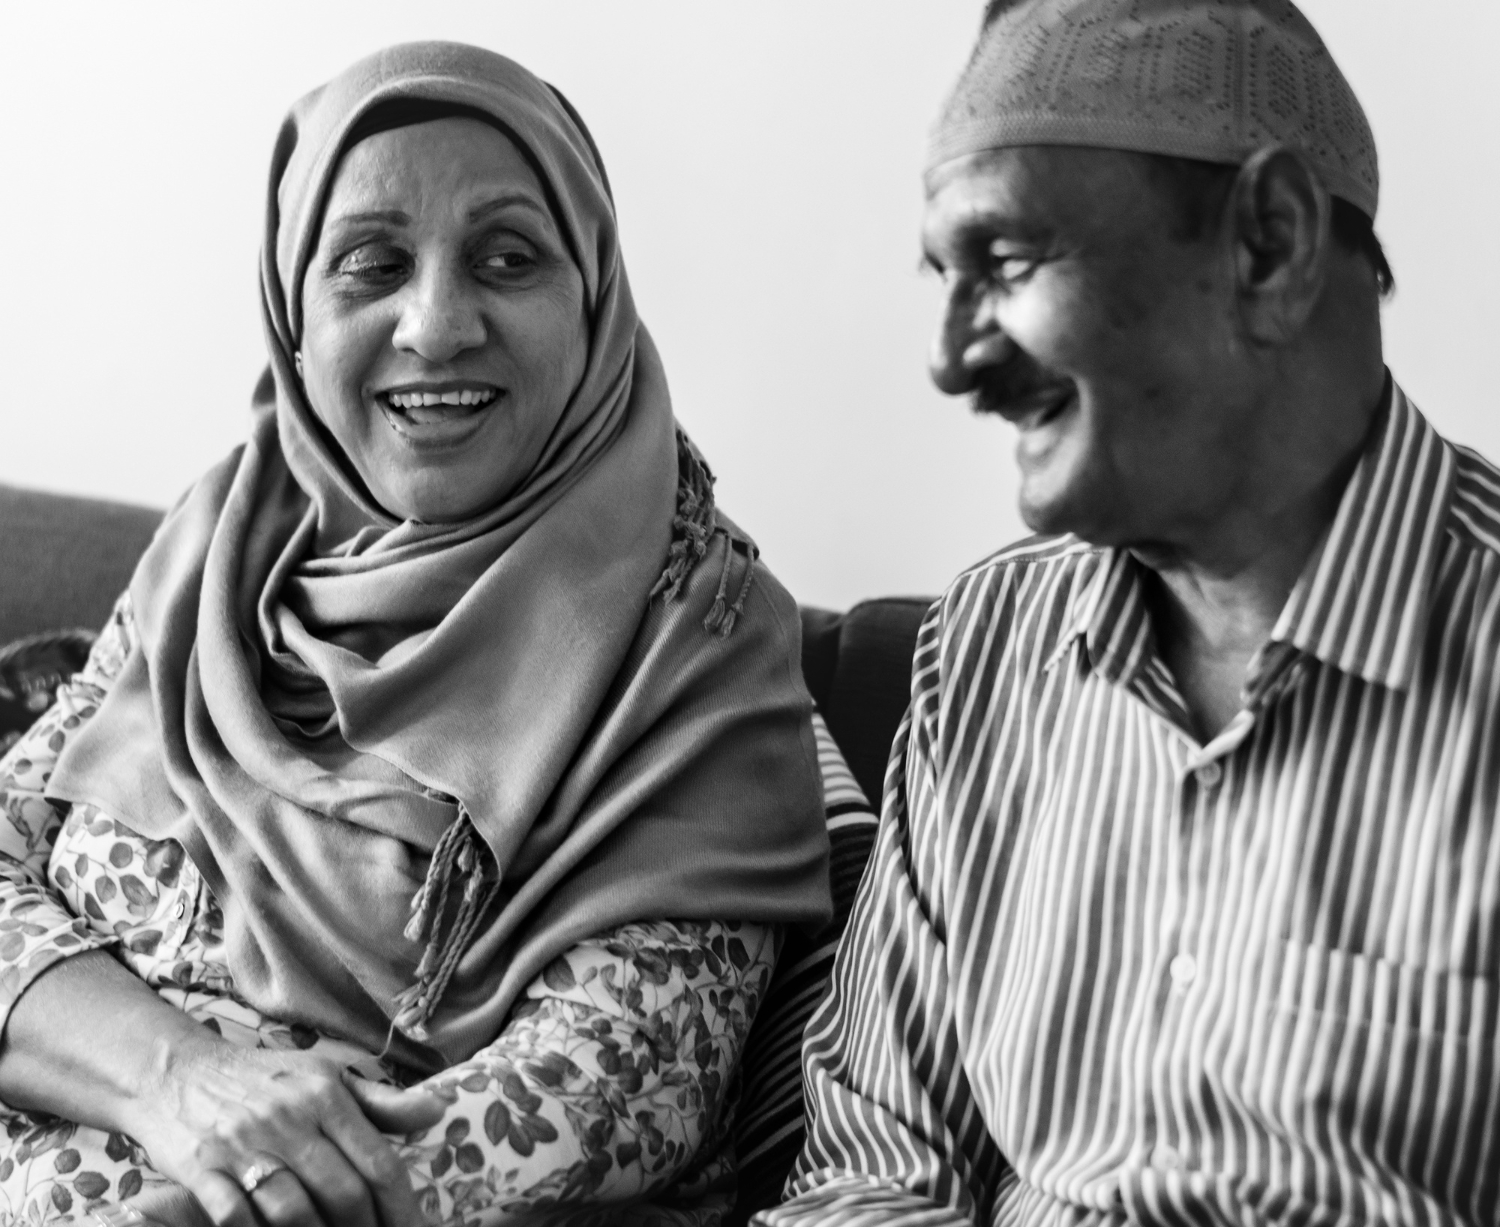 Ingin Hidup Berkah? Ini Amalan-Amalan yang Wajib Diterapkan Umat Muslim Dalam Kehidupannya